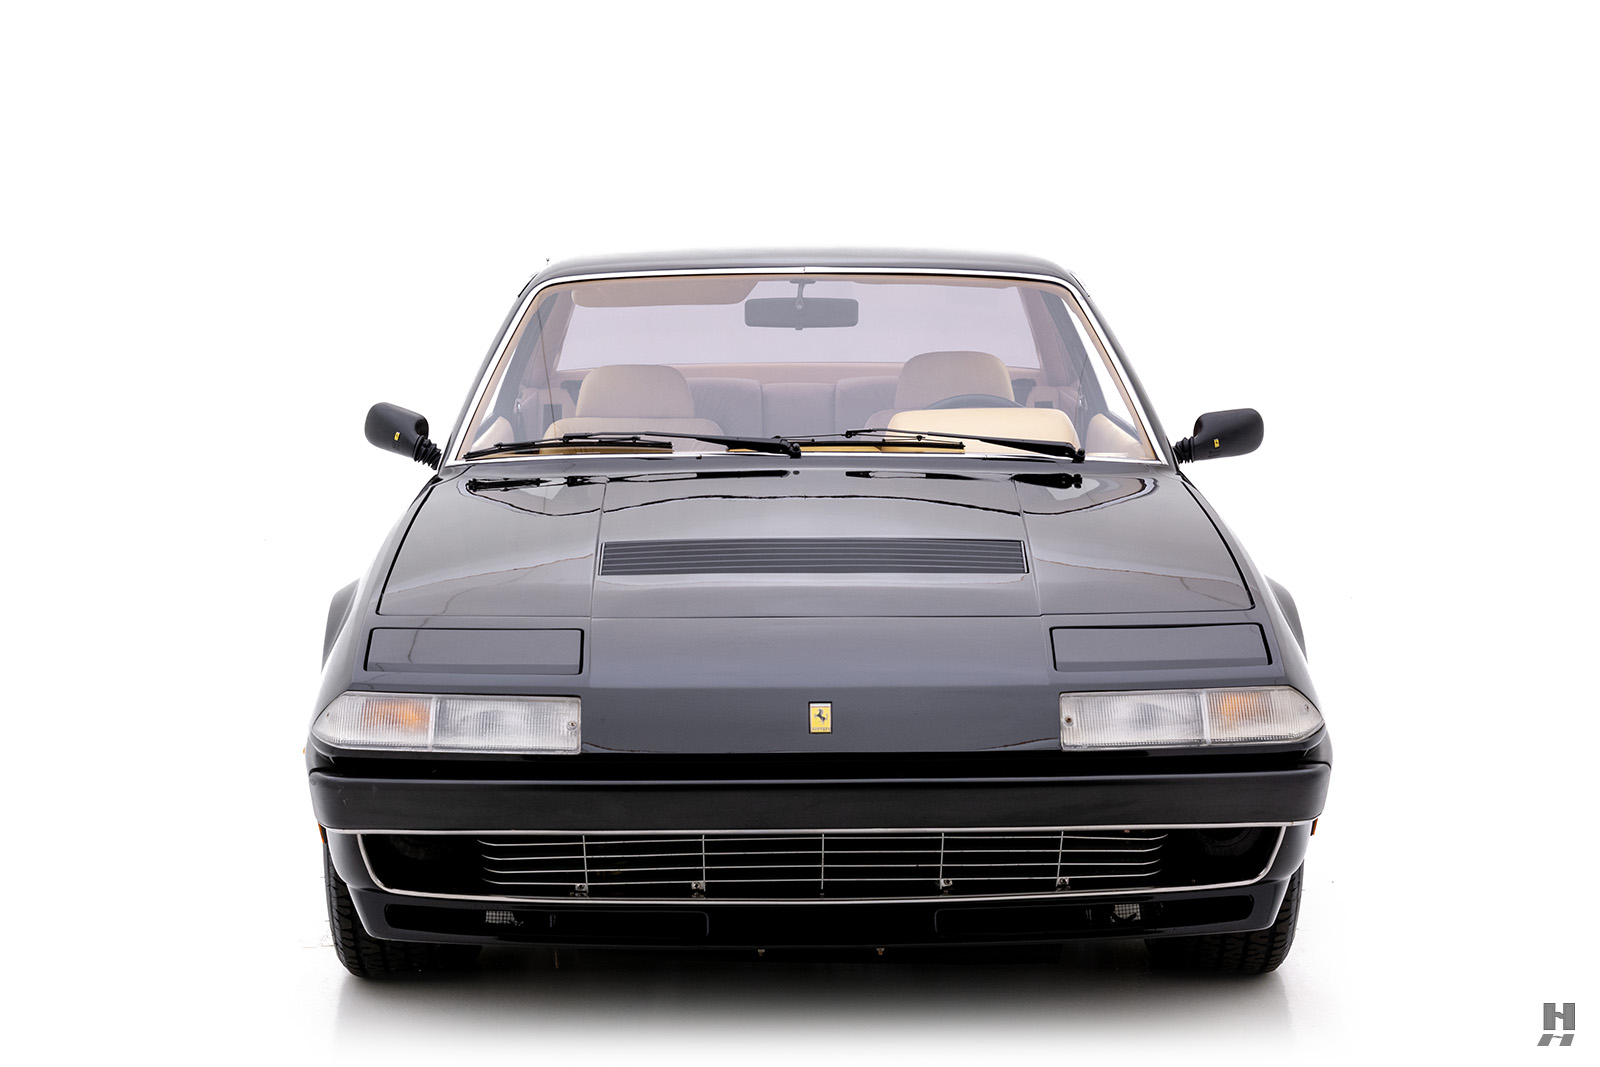 1980 Ferrari 400i